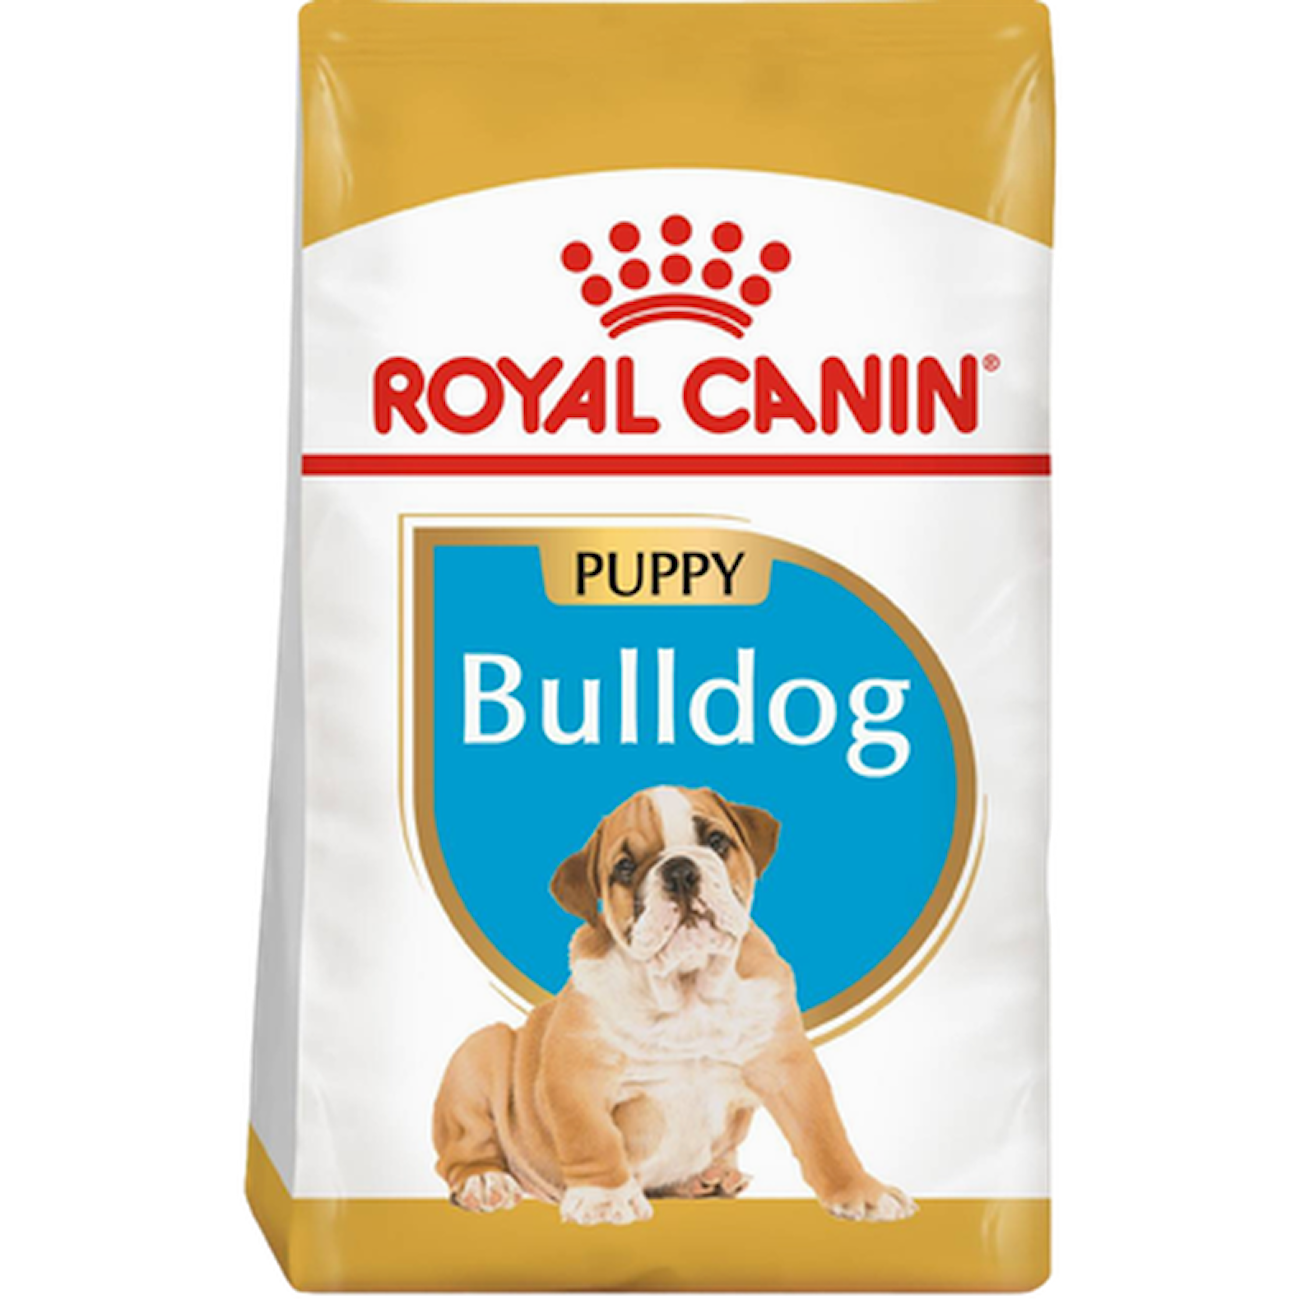 Breed Bulldog Puppy 1 12 kg